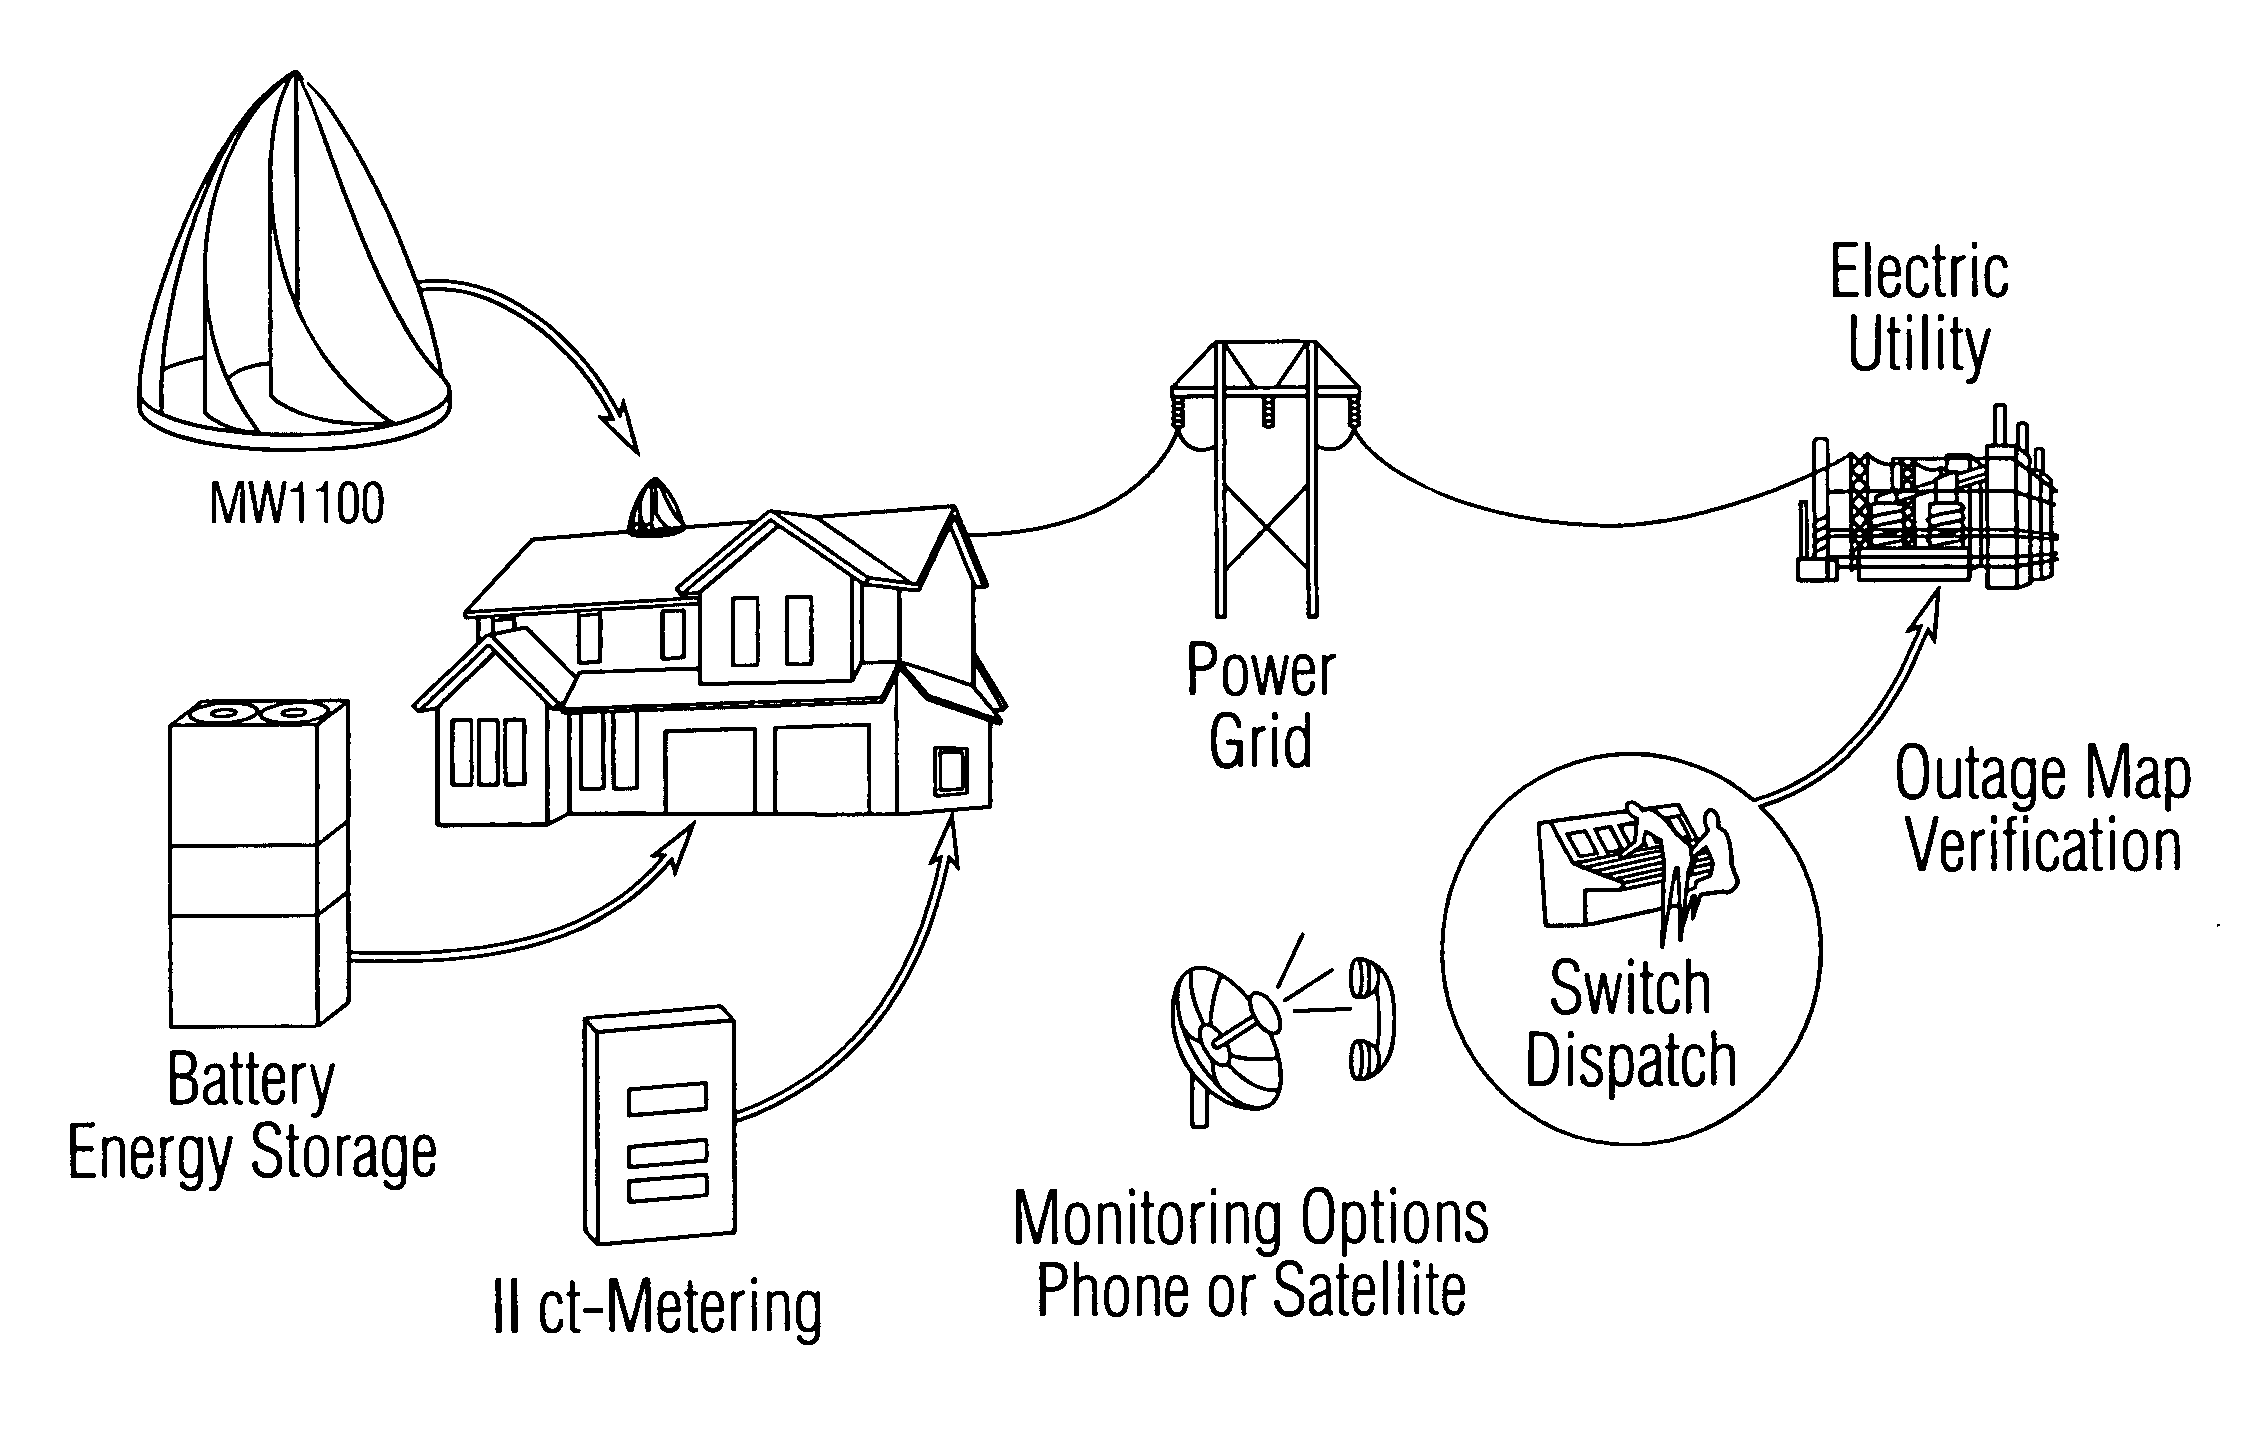 Modular adaptive power matrix